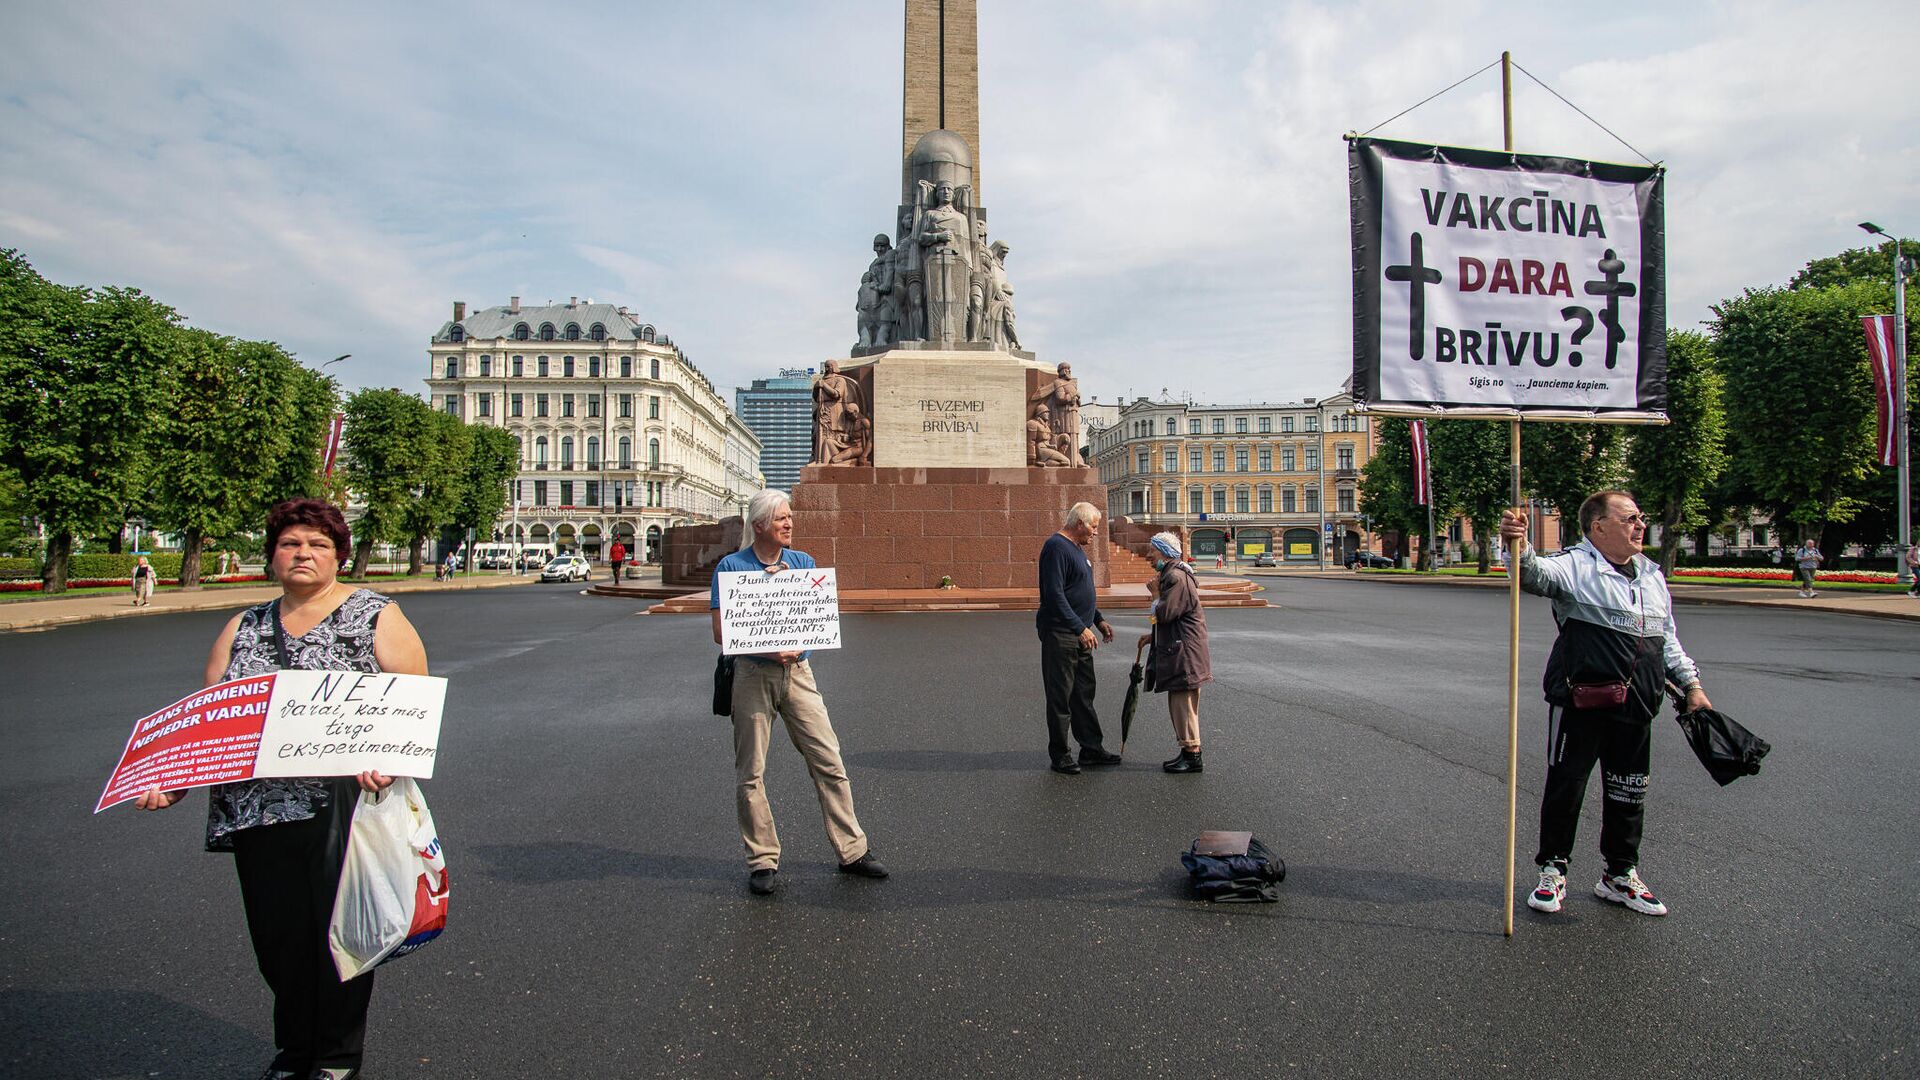 Несколько сотен человек собрались у памятника Свободы на акцию протеста против принудительной вакцинации - Sputnik Латвия, 1920, 17.08.2021